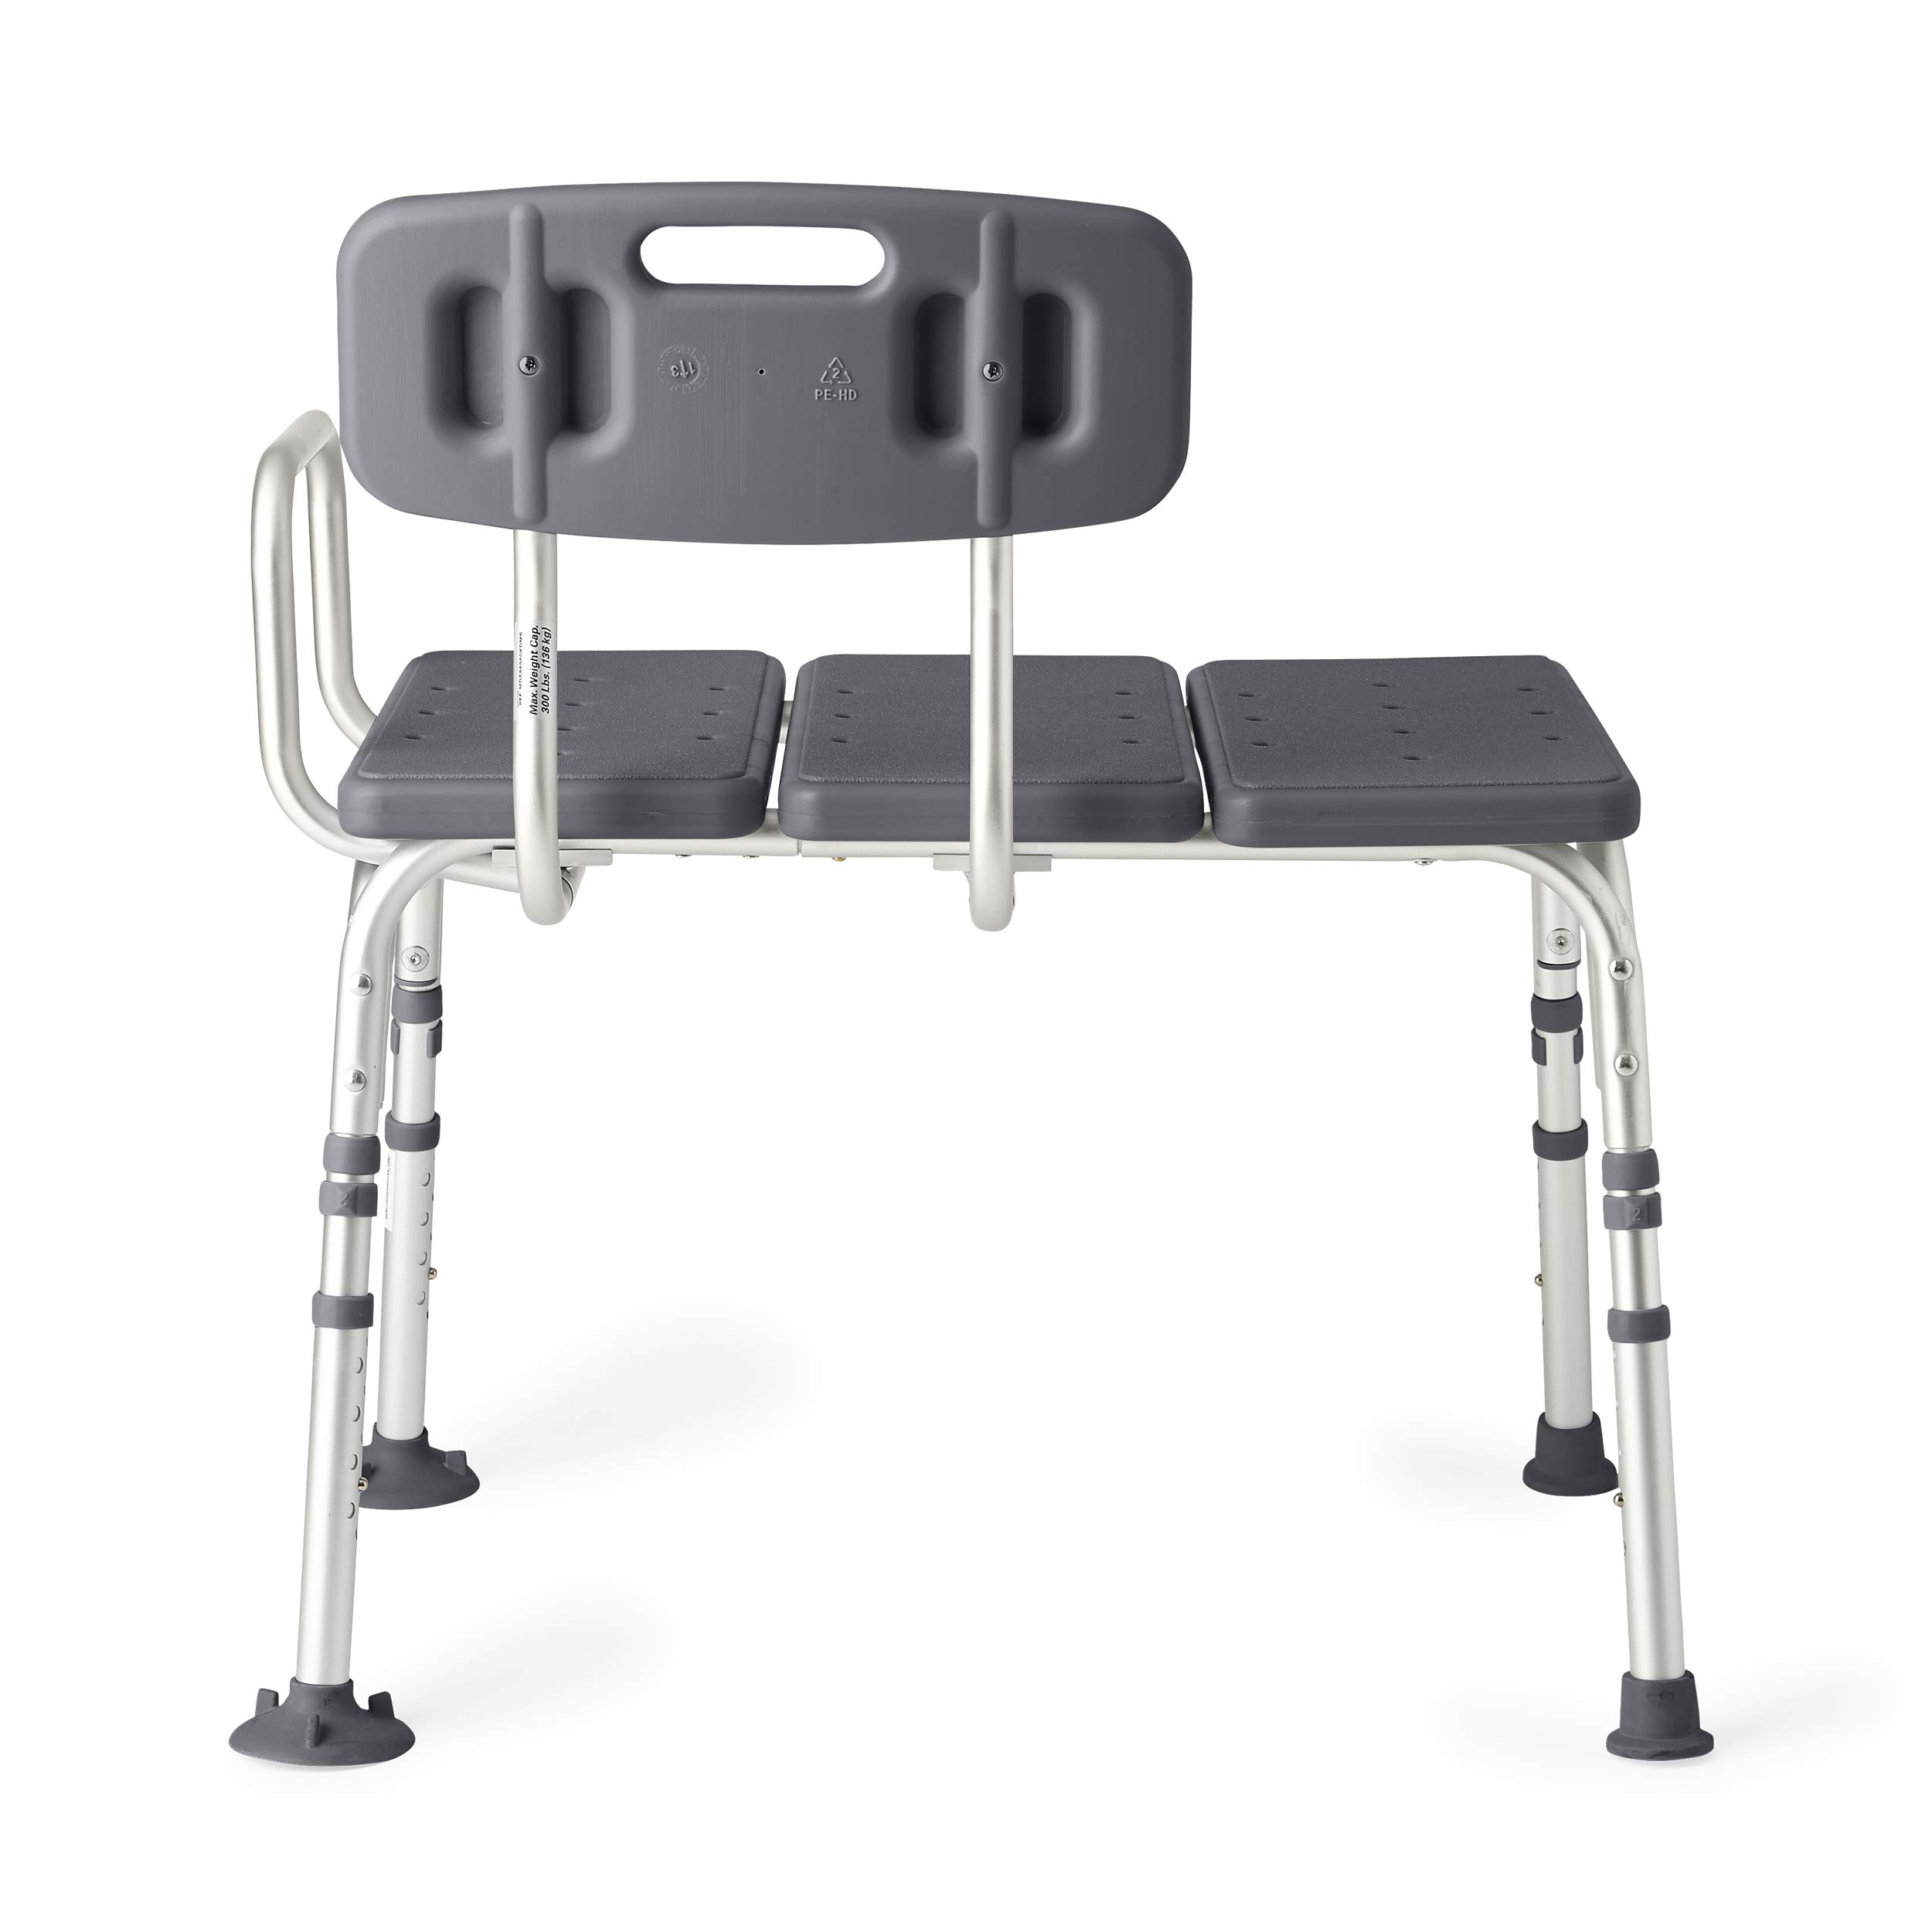 Medline Tub Transfer Bench, Shower Chair for Seniors is Adjustable, Gray